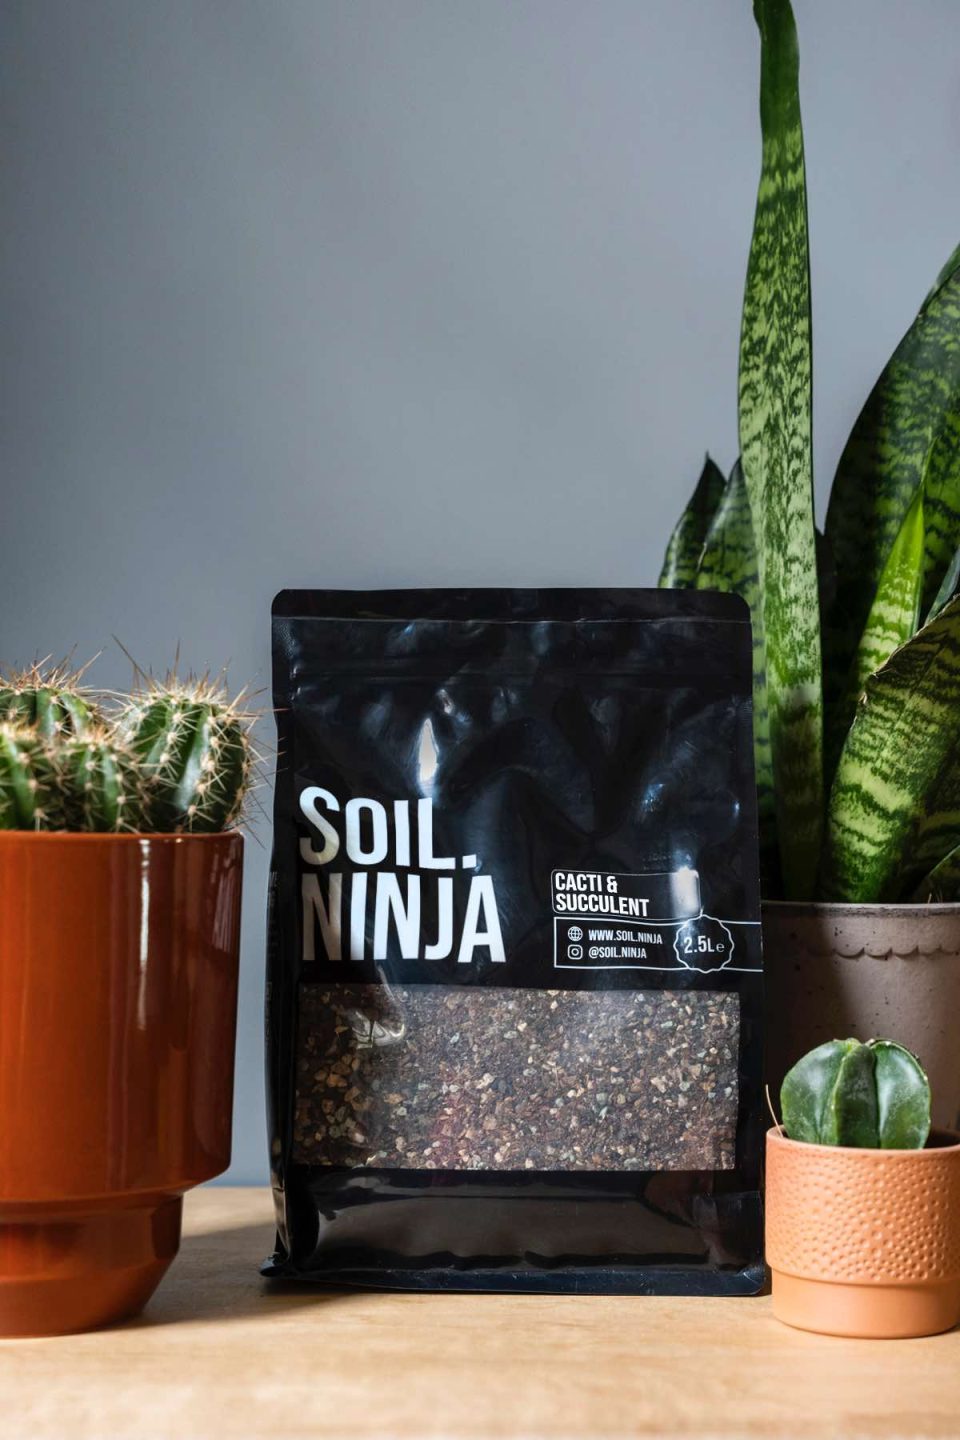 Na slici se vidi vreća supstrata od 2,5 kg proizvođača Soil.Ninja za kaktuse i sukulente. Uz vreću stoje kaktusi i sukulenti u teglicama.